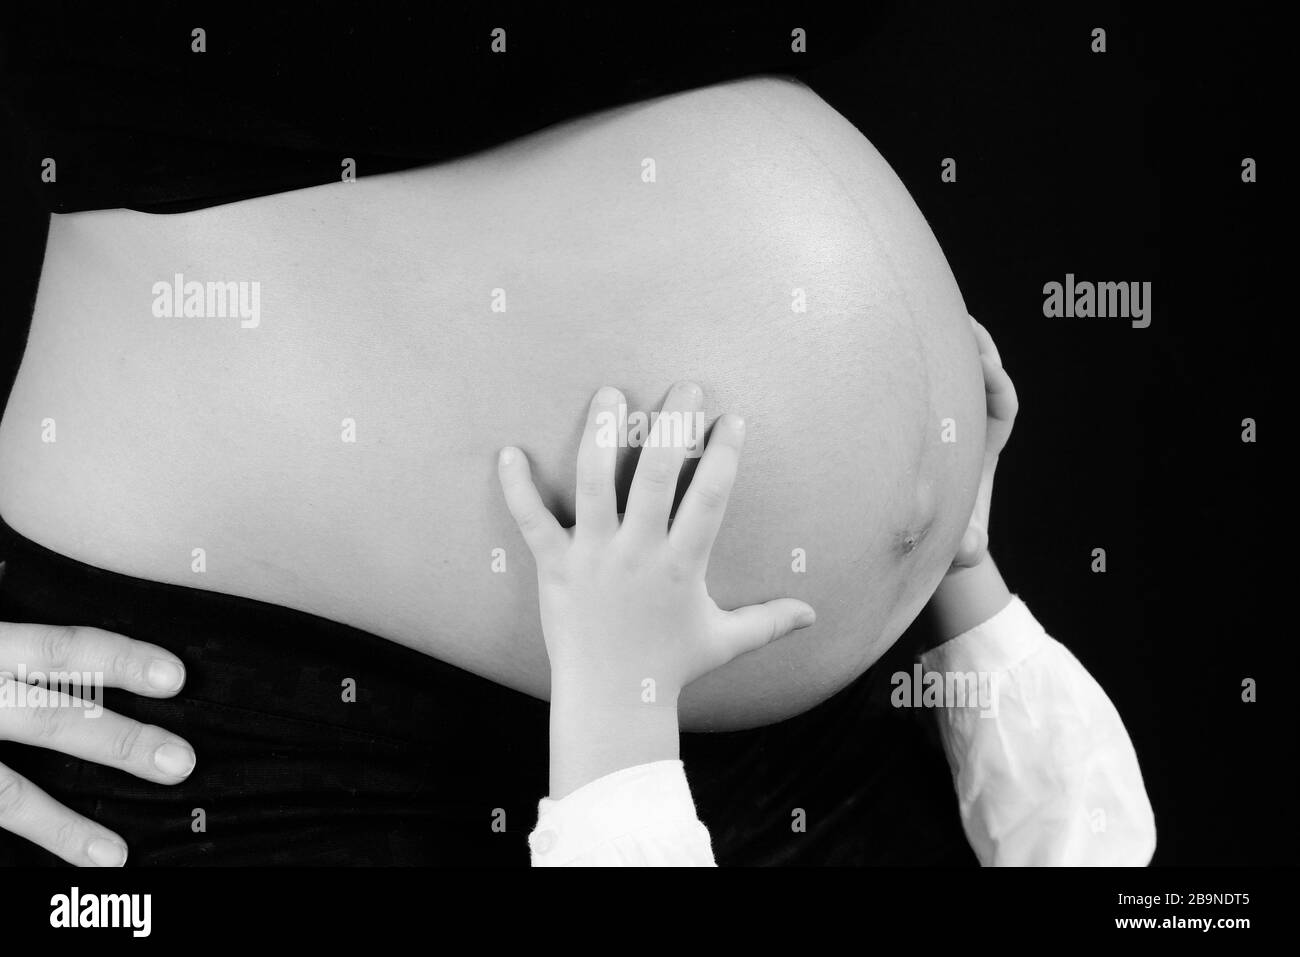 Immagine in bianco e nero della pancia della donna incinta con le mani piccole supportate. Foto Stock